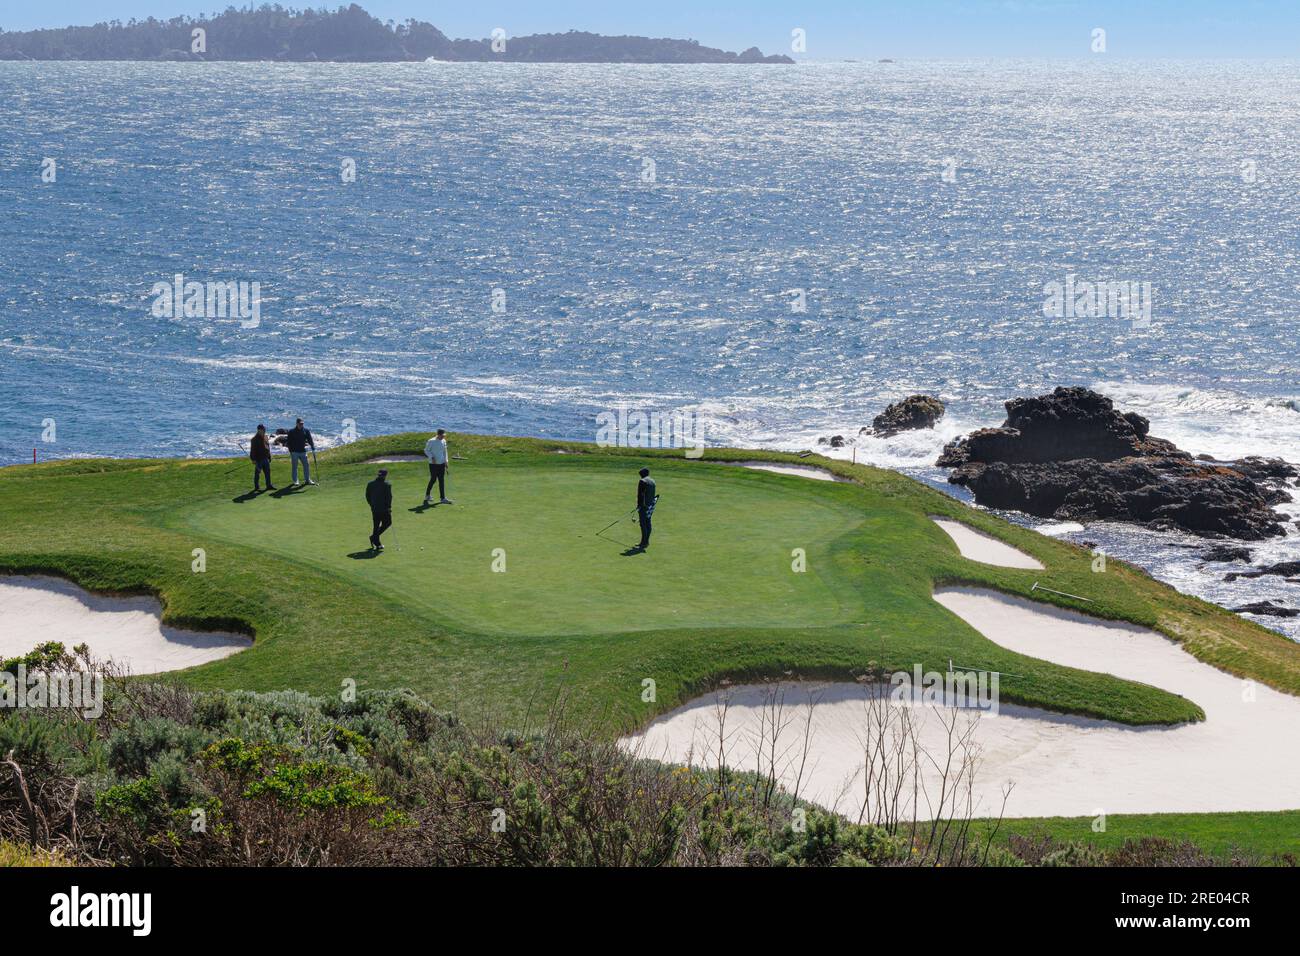 spectacular golf course above the cliffs, USA, California, Pebble Beach, Monterey Stock Photo